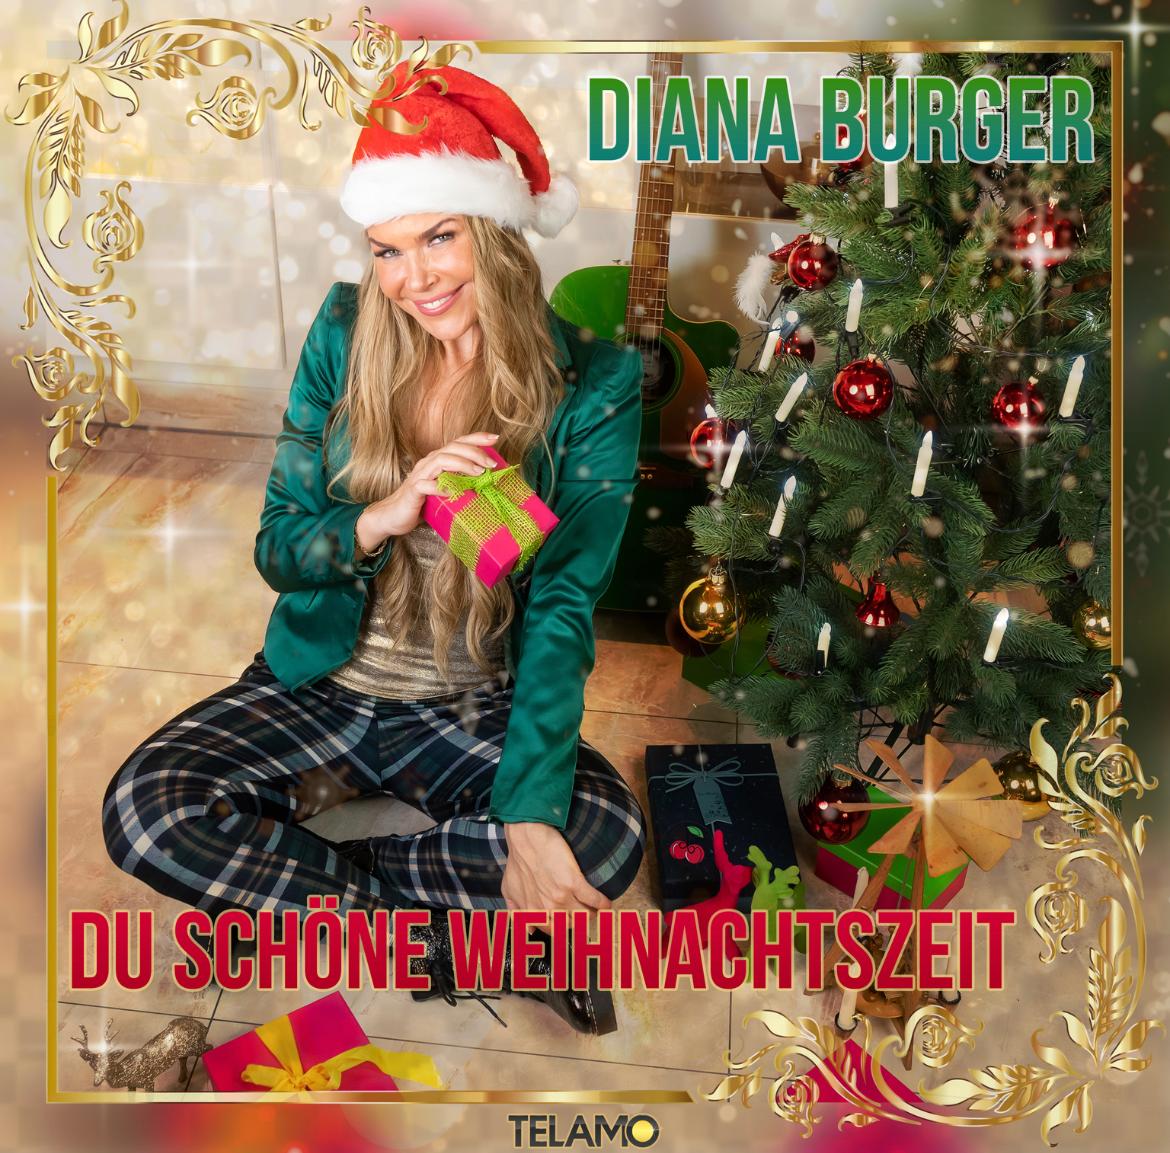 Diana Burger, "Du schöne Weihnachtszeit"